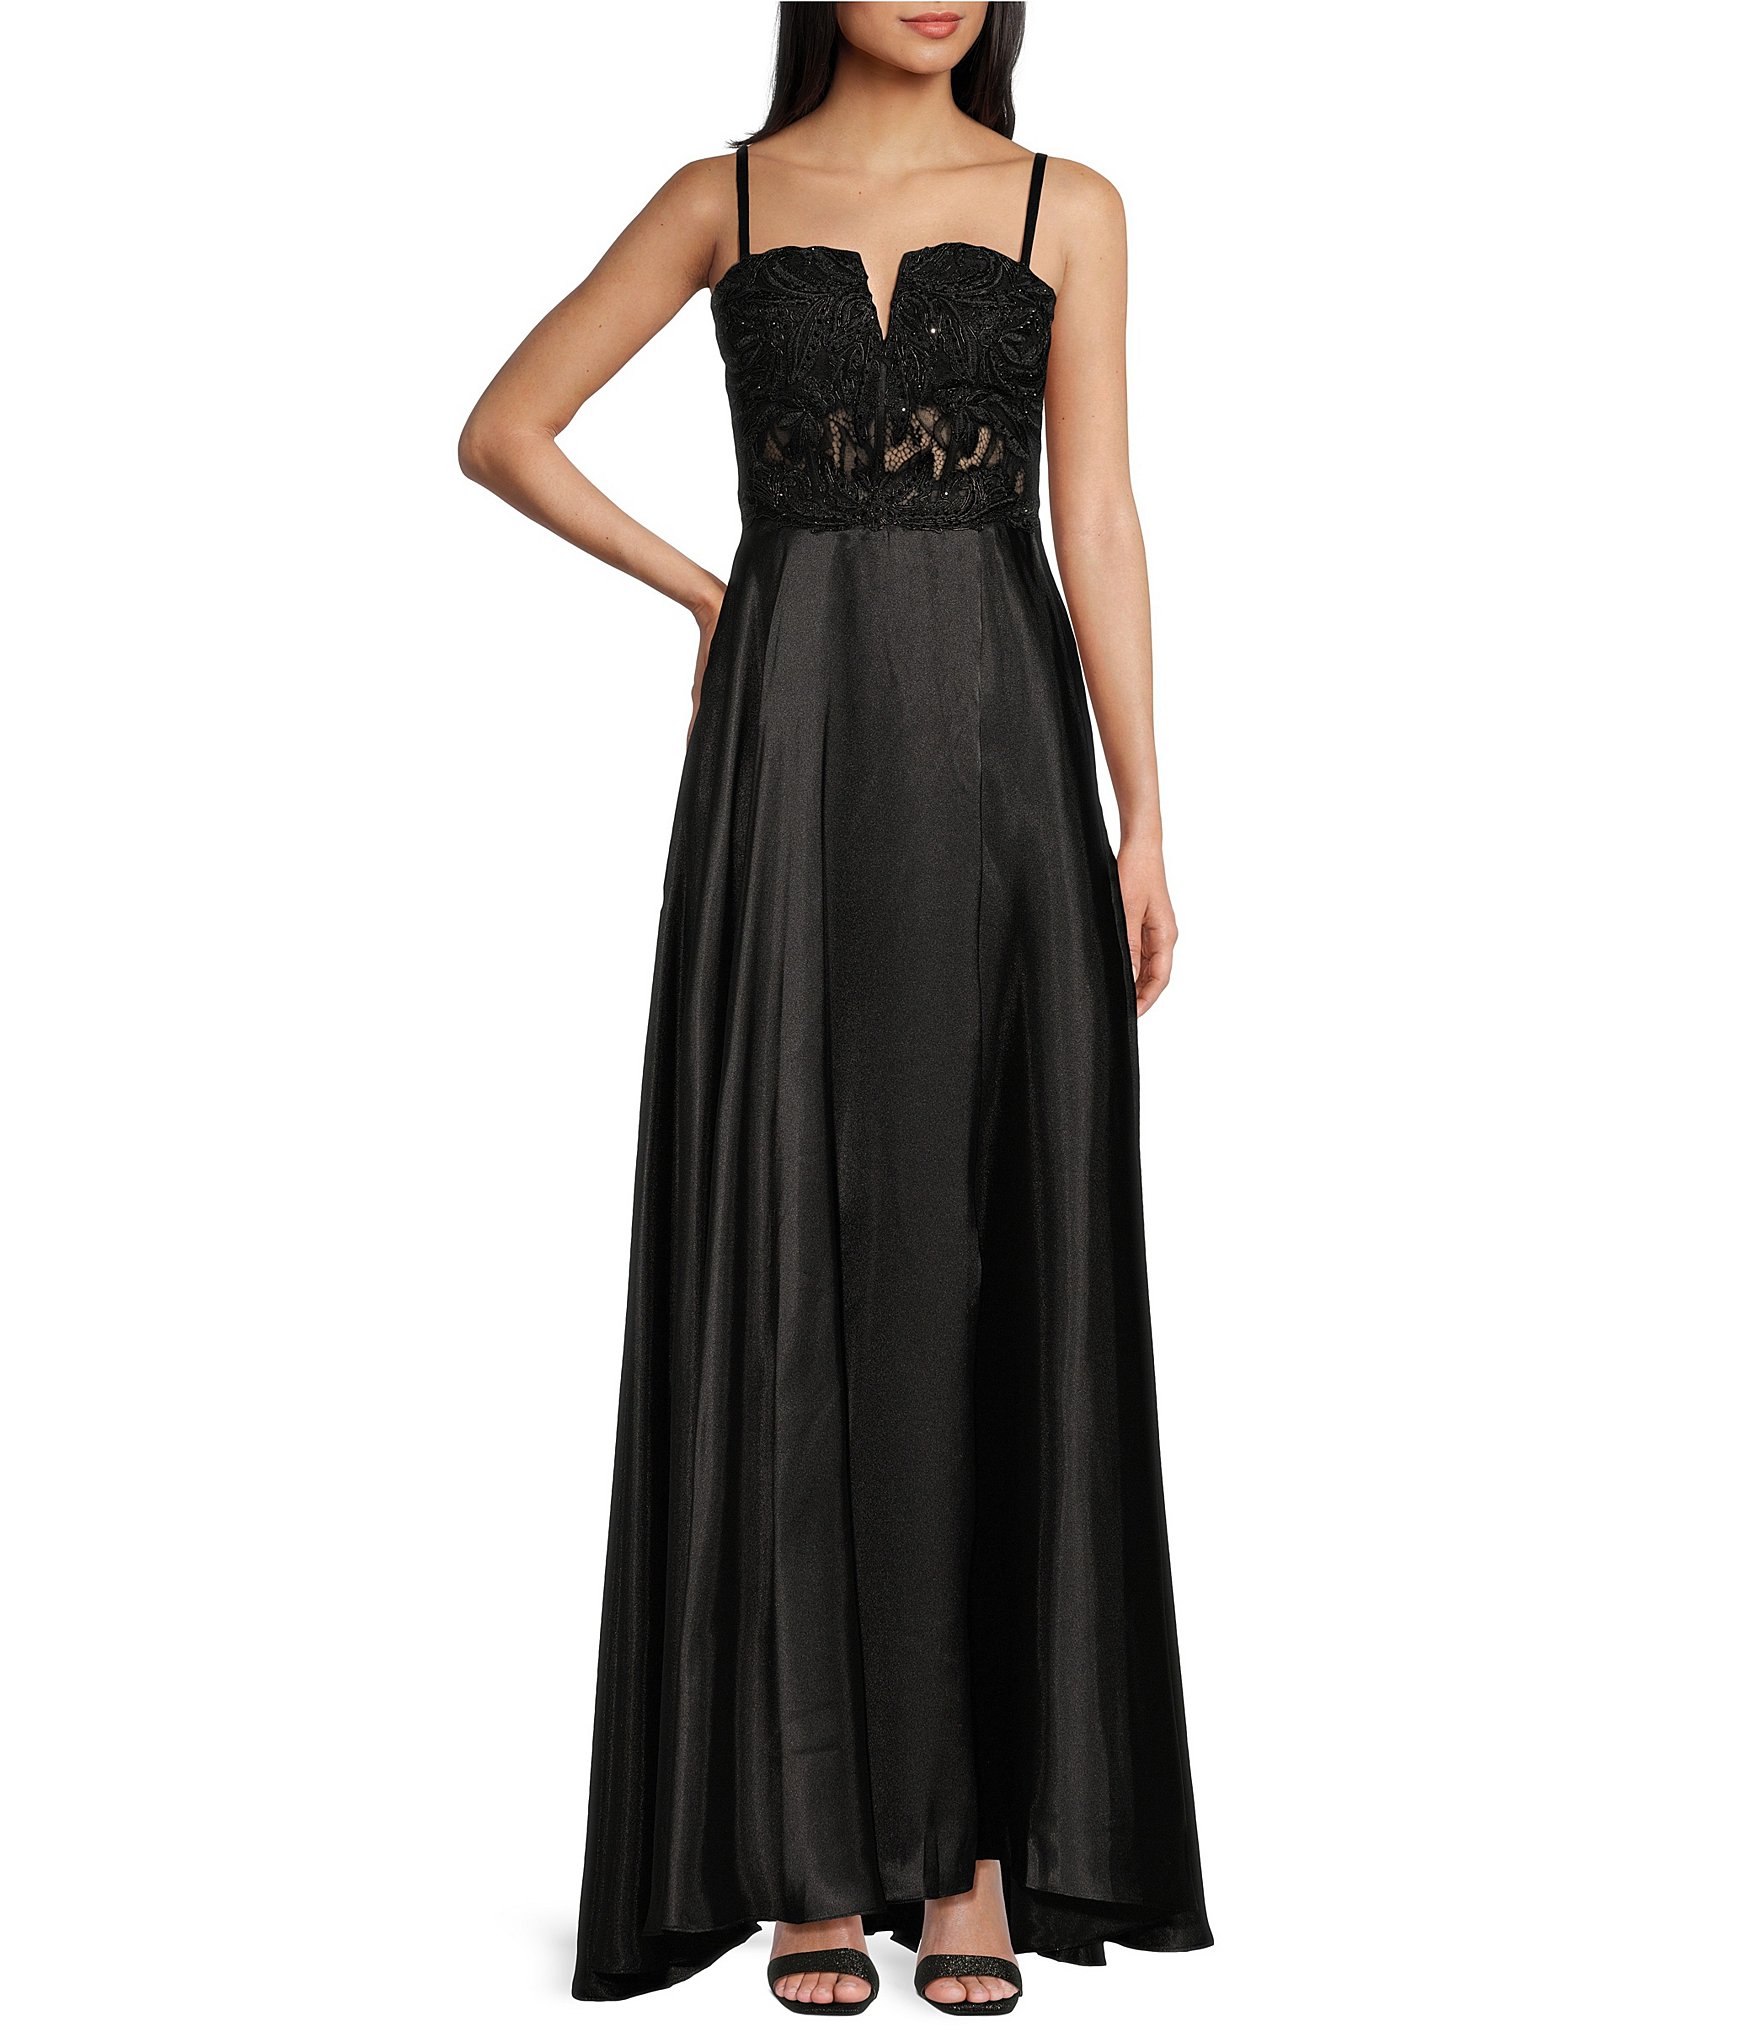 Black Lace A-Line Dress, Cute Little Black Lace Dress, Juniors Online  Boutique Dress Lily Boutique